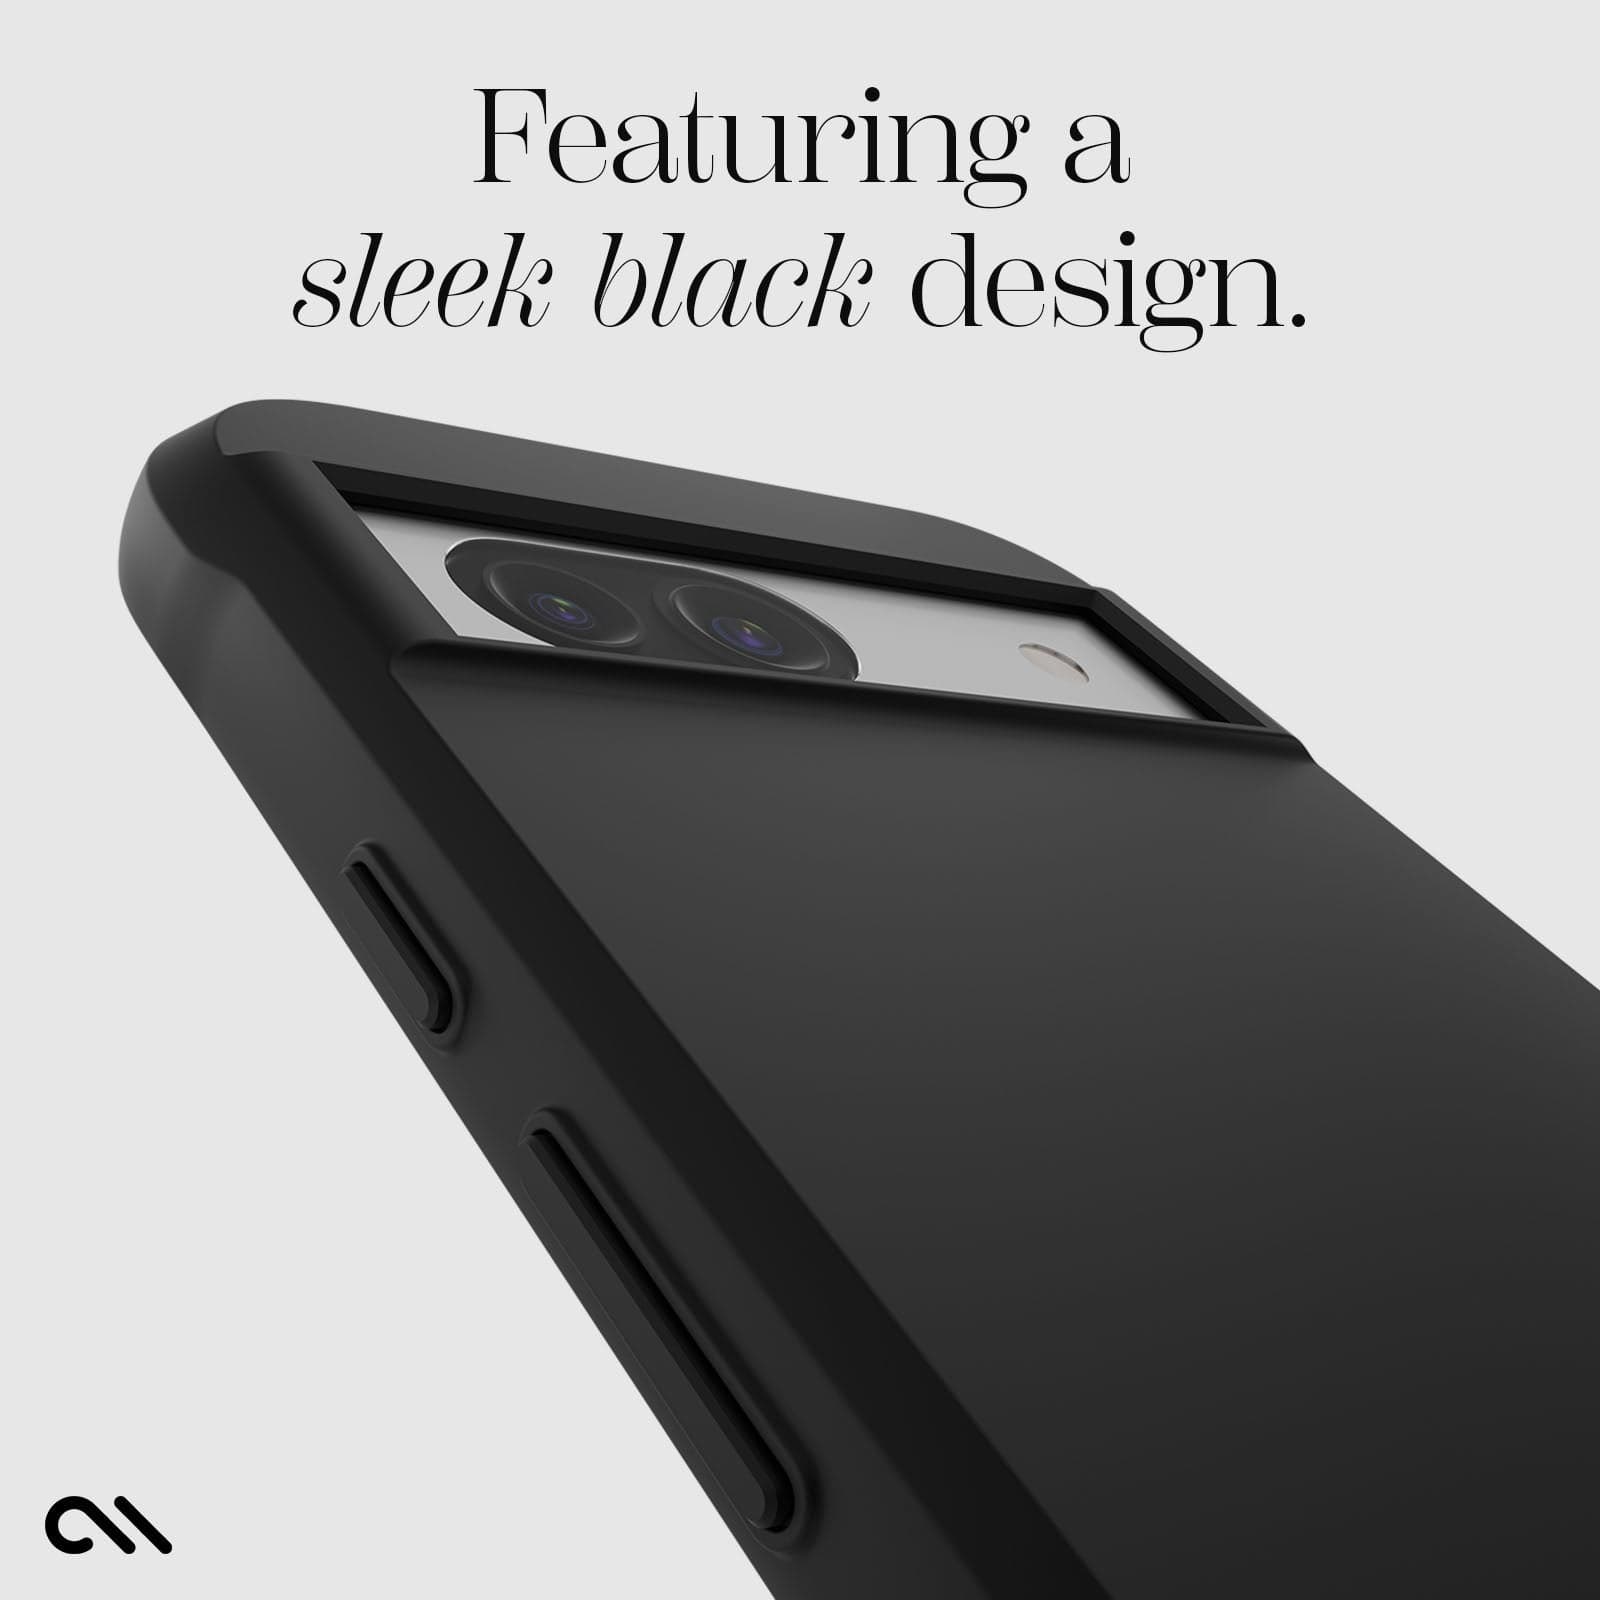 featuring a sleek black design